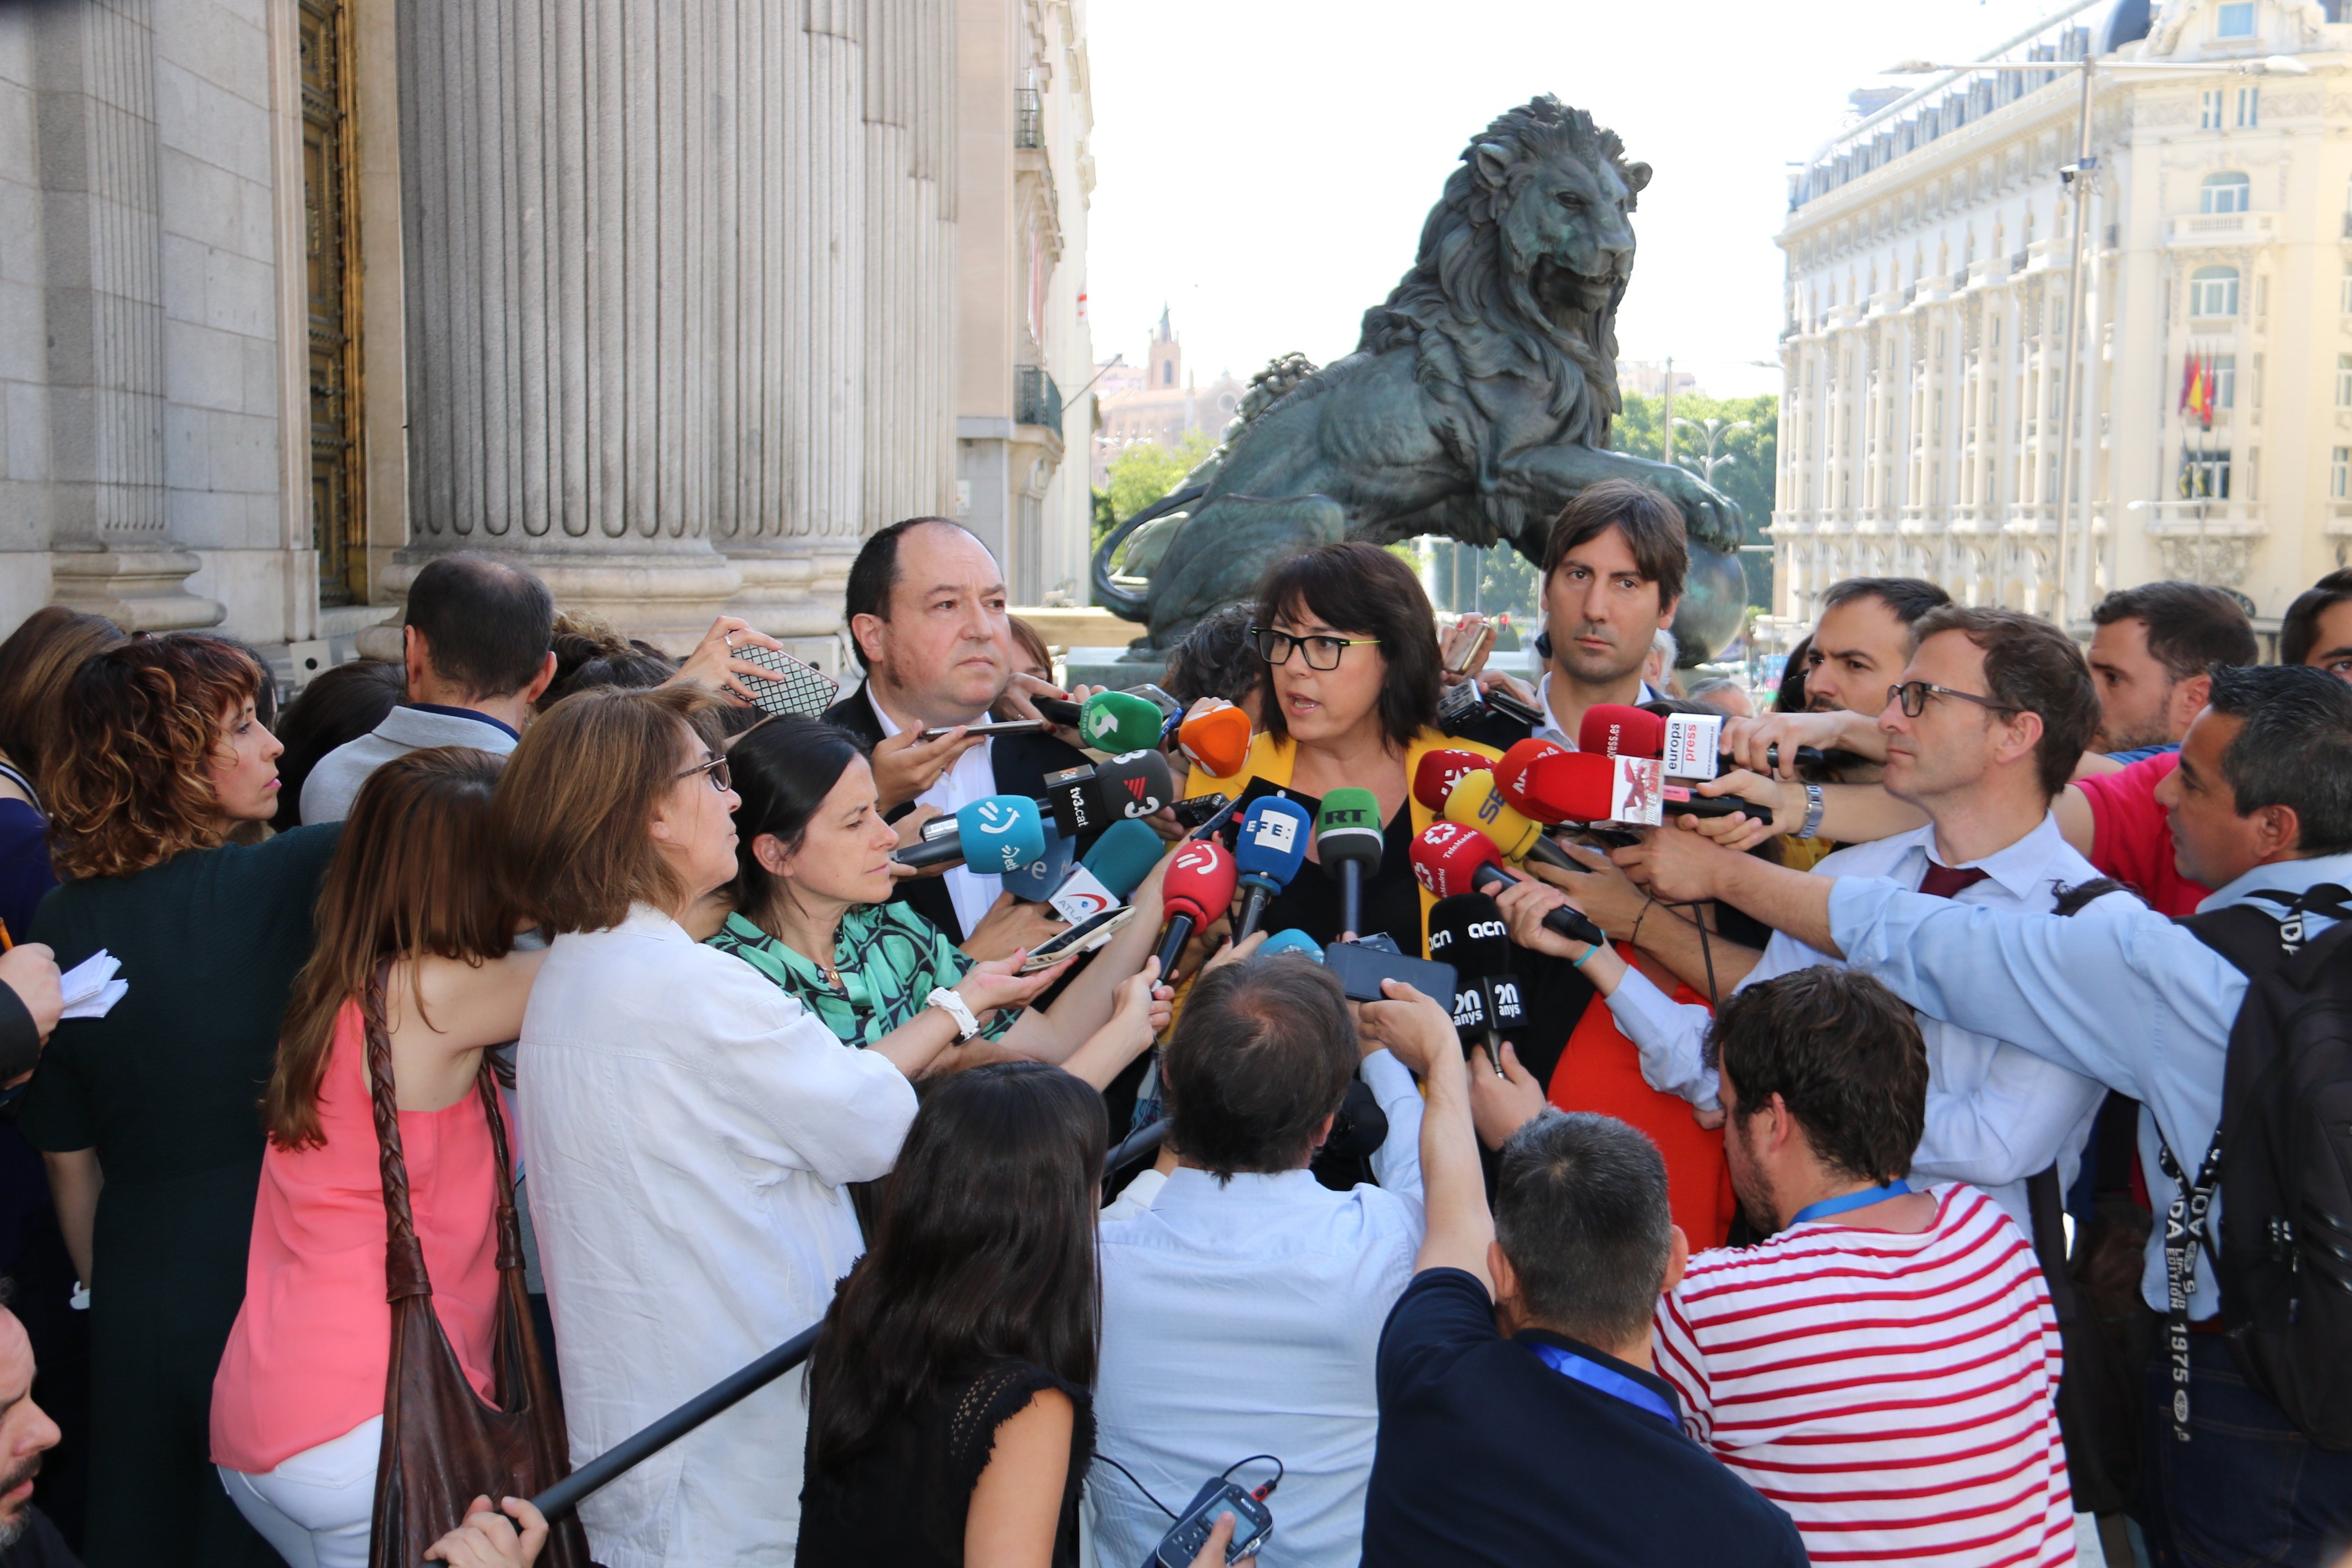 Riba denuncia el veto a Junqueras: "Ho portarem a les altes instàncies europees"